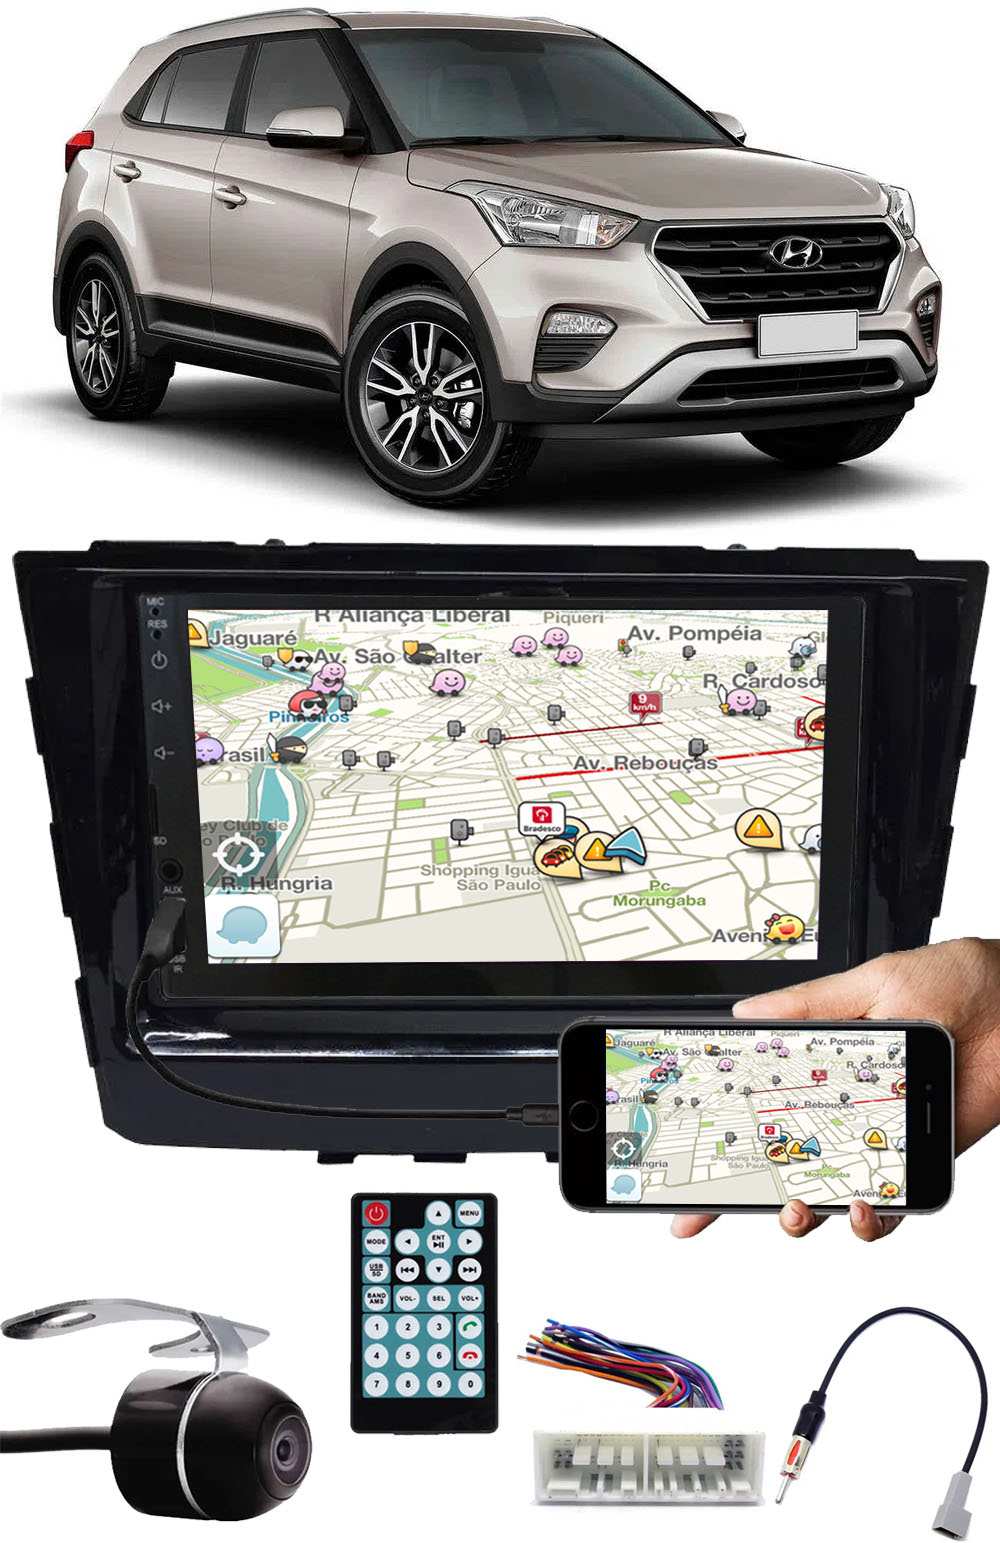 Multimídia Hyundai Creta Espelhamento Bluetooth USB SD Card + Moldura + Chicotes + Câmera Ré